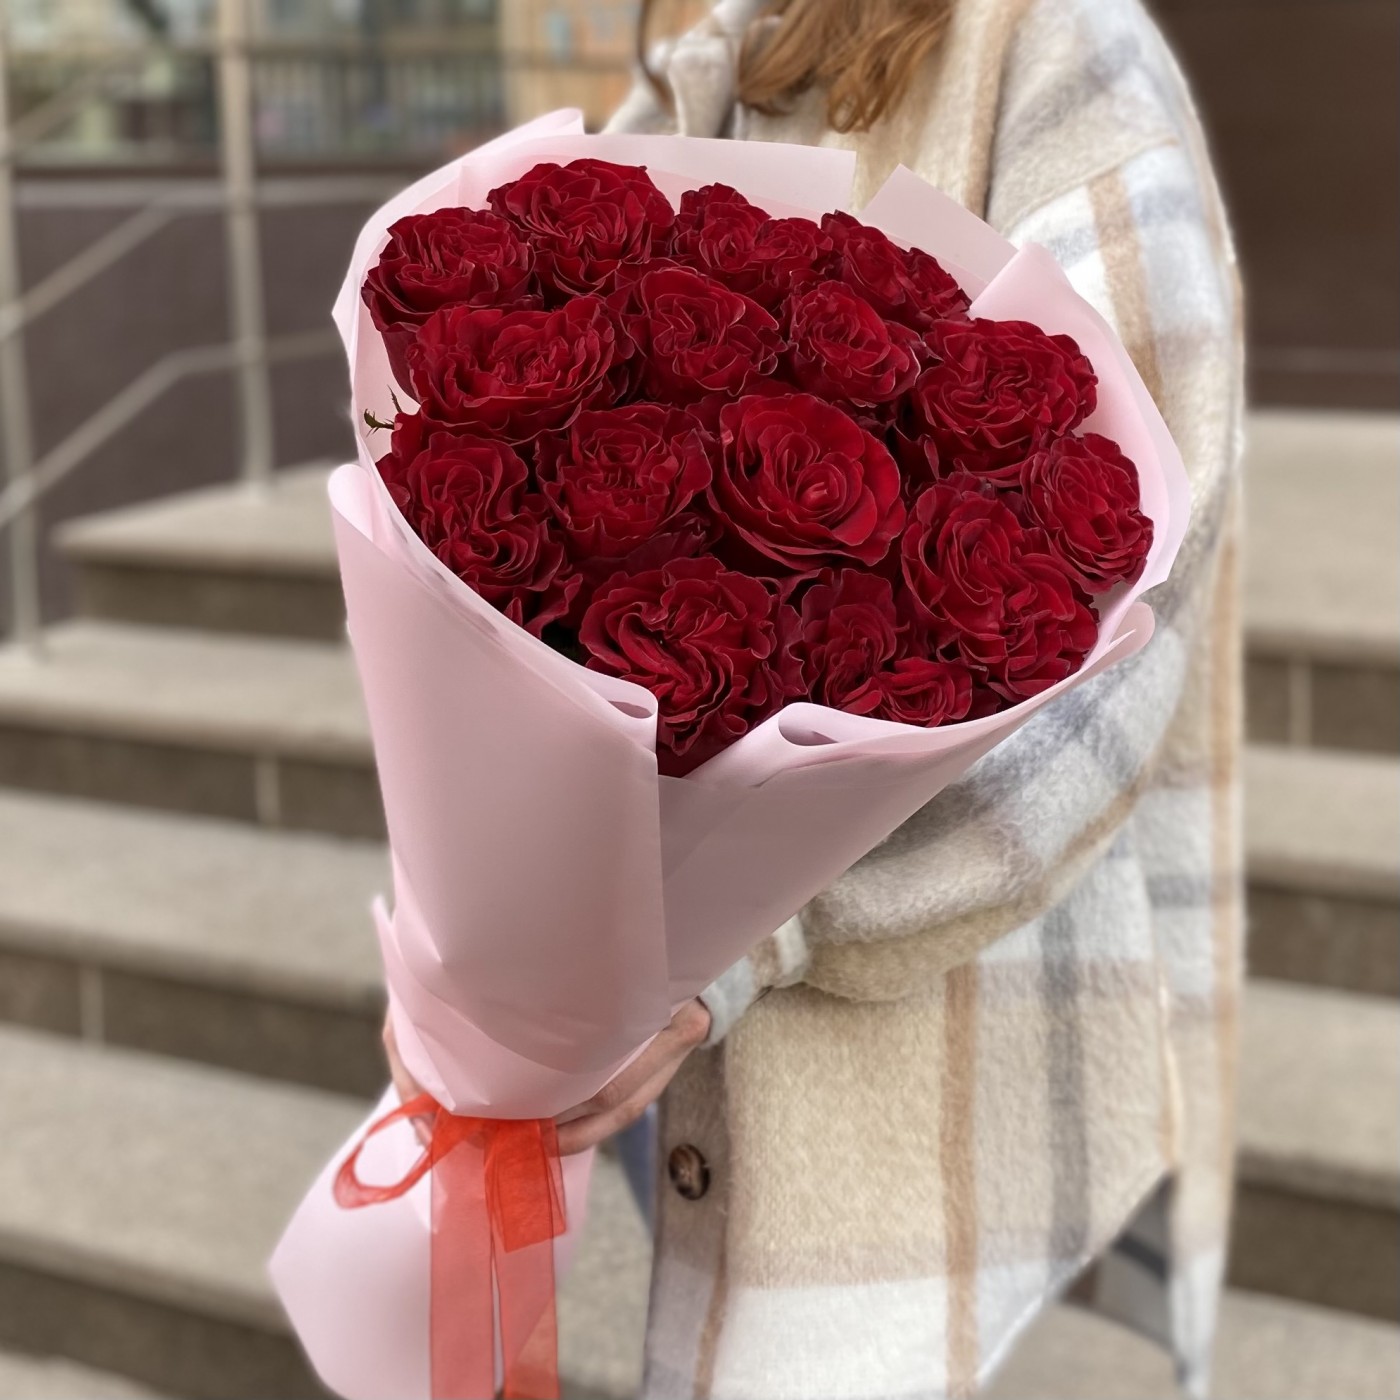 15 красных пионовидных роз Хартс